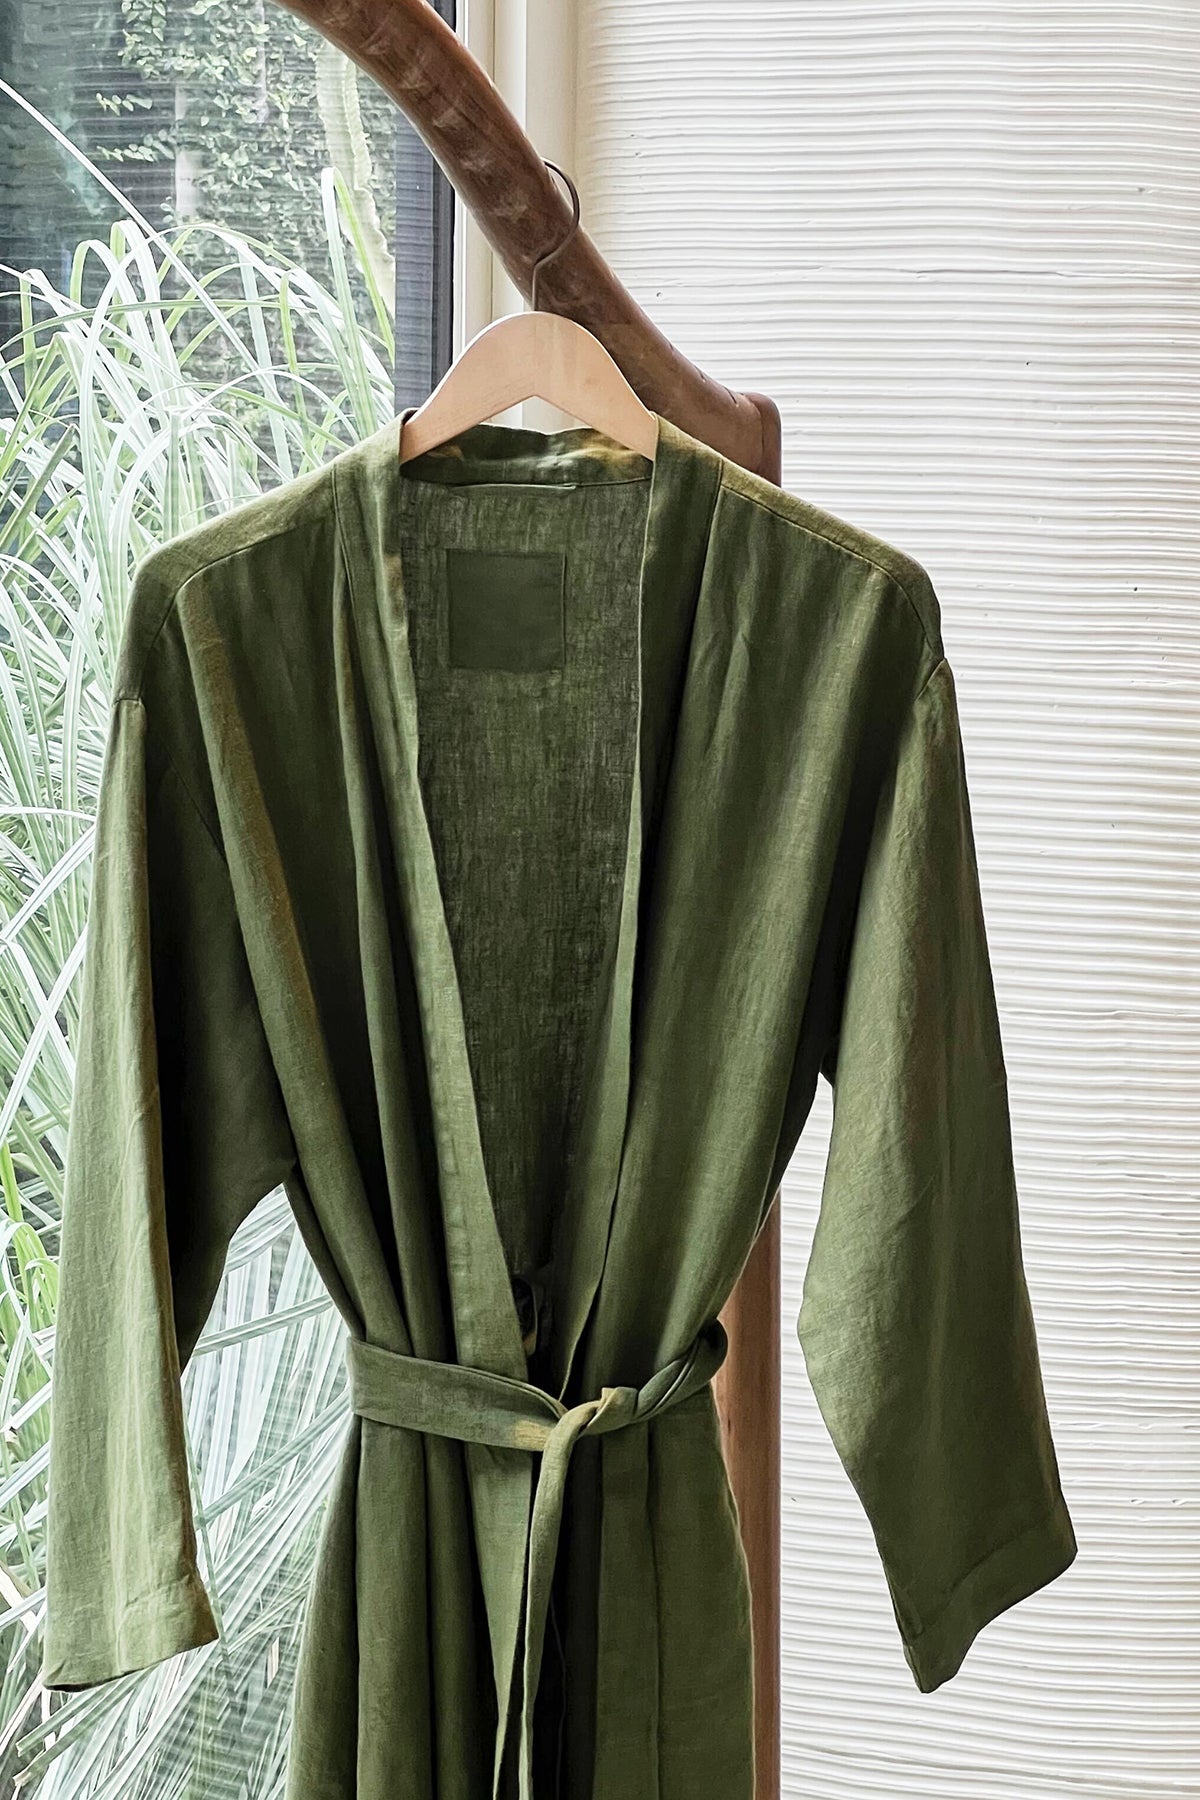 Jenny Graham Linen Robe in basil green on hanger near window-26312946745537